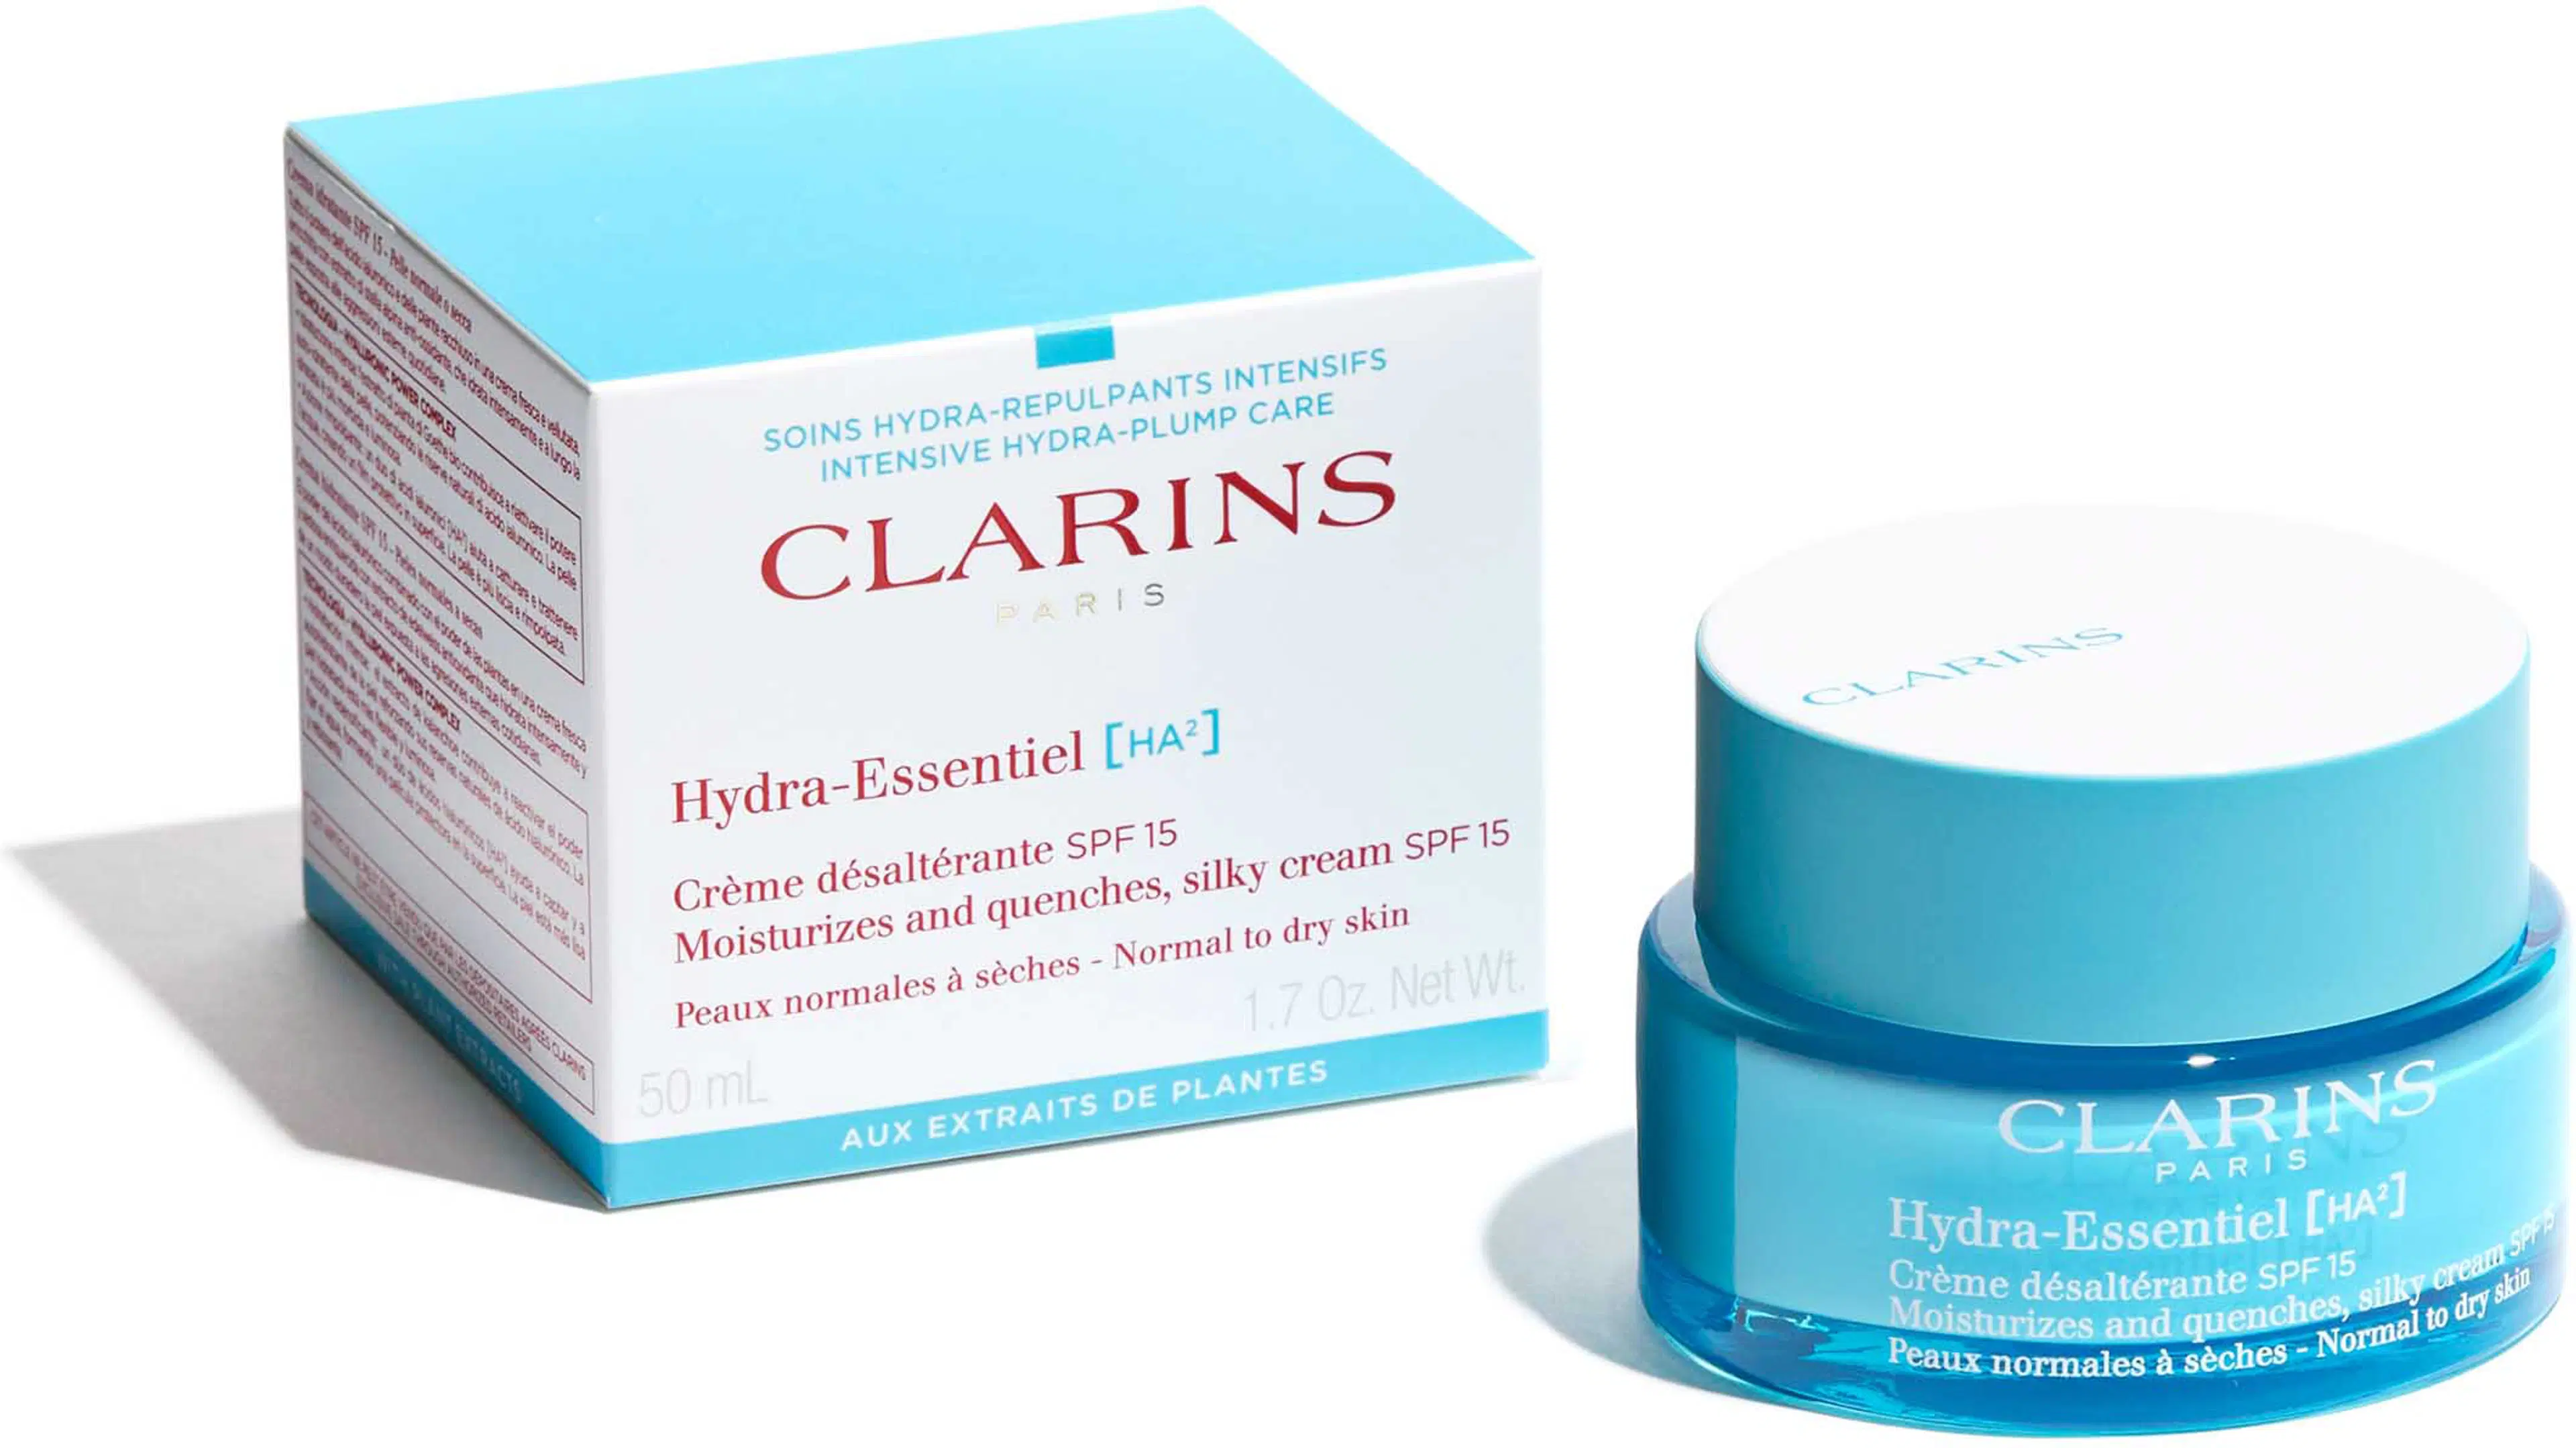 Clarins Hydra-Essentiel [HA²] SPF 15 Silky Cream päivävoide 50 ml